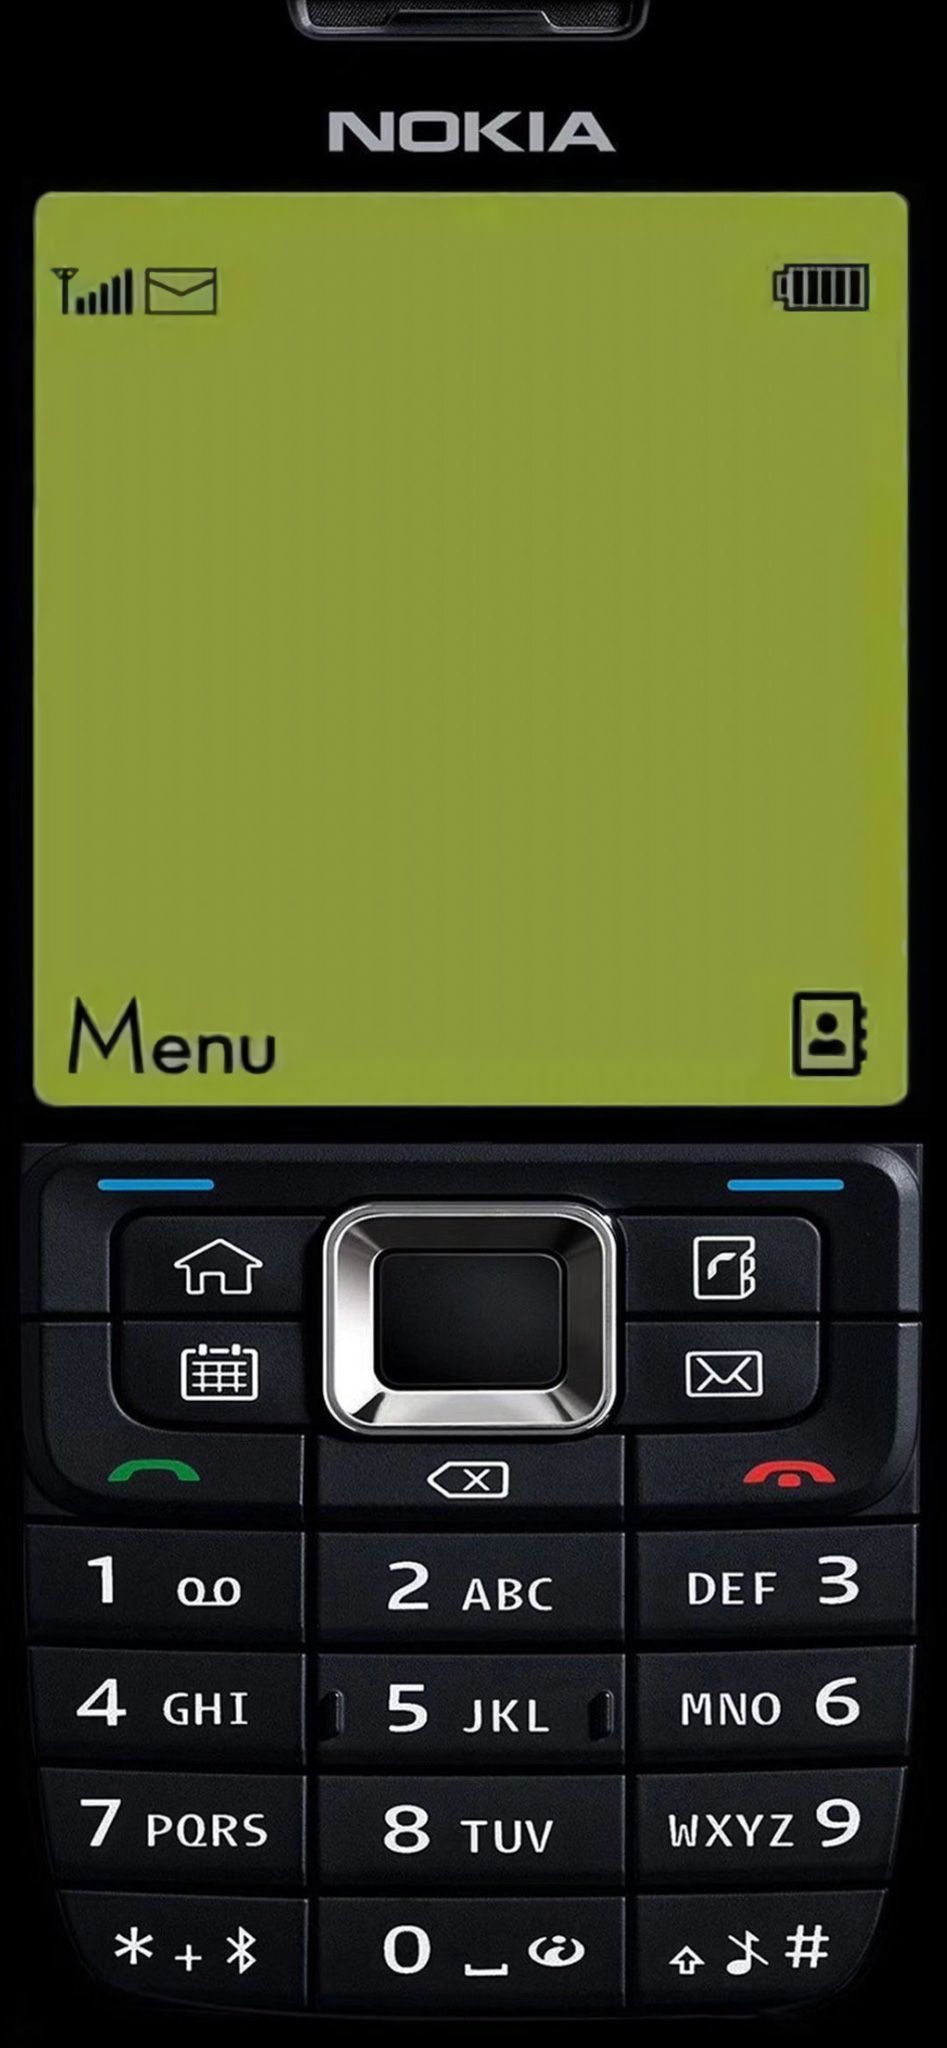 แจกวอลเปเปอร์ Nokia 3310, BB, Motorola, Samsung รุ่นฮิต เปลี่ยนสมาร์ทโฟนเป็นปุ่มกดสุดคลาสสิค